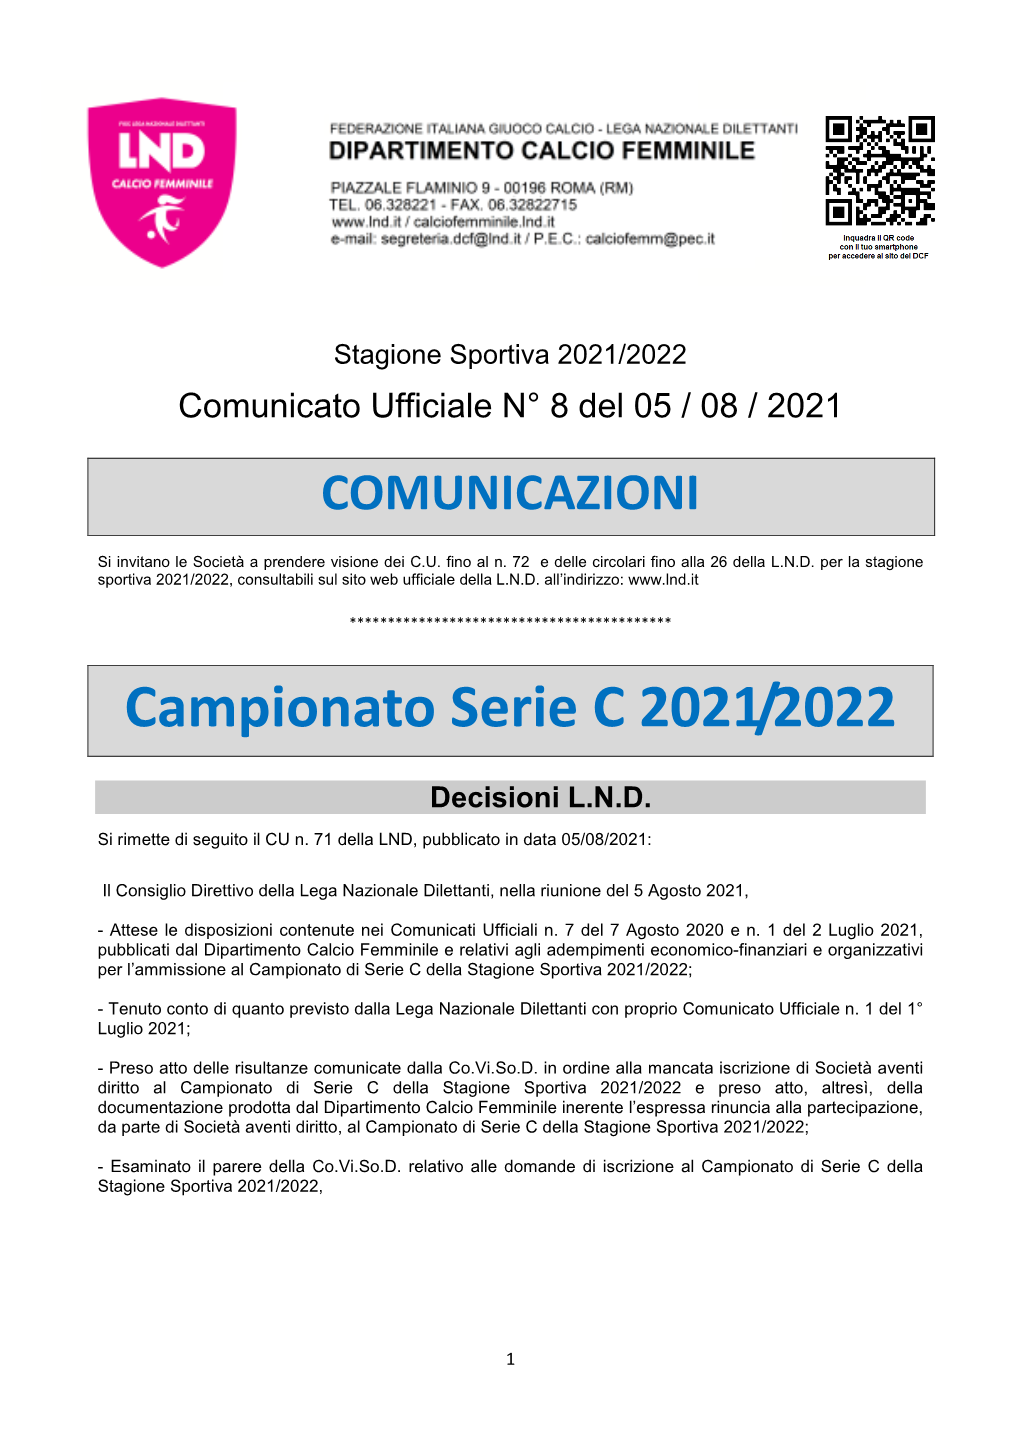 Campionato Serie C 2021/2022